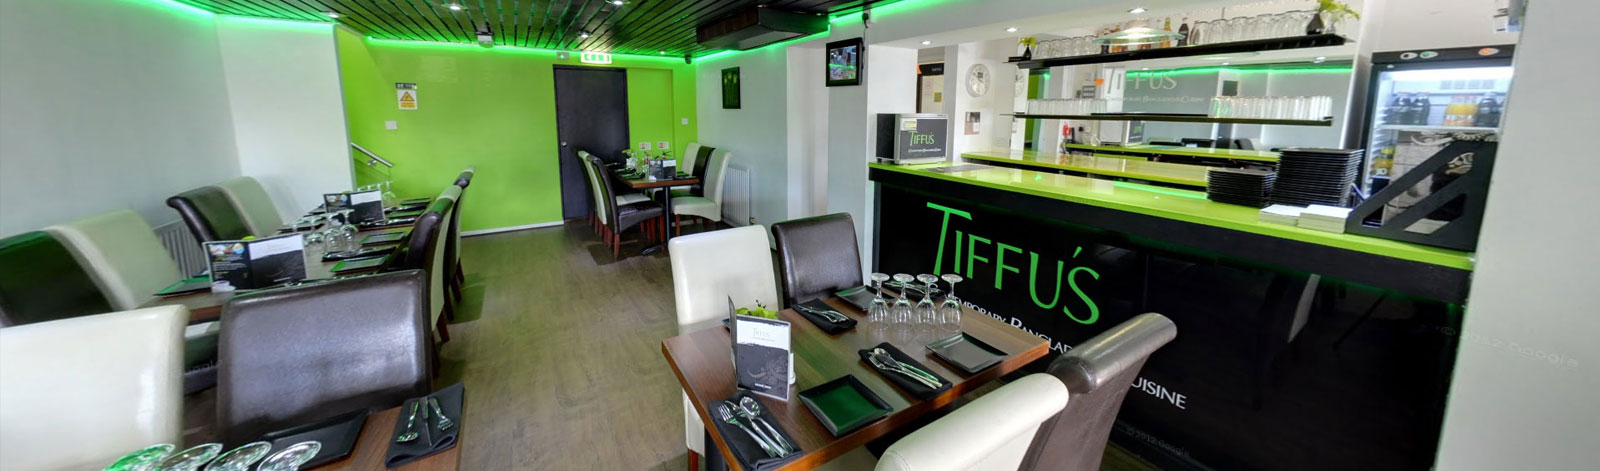 Tiffus Indian and Bangladeshi Restaurant